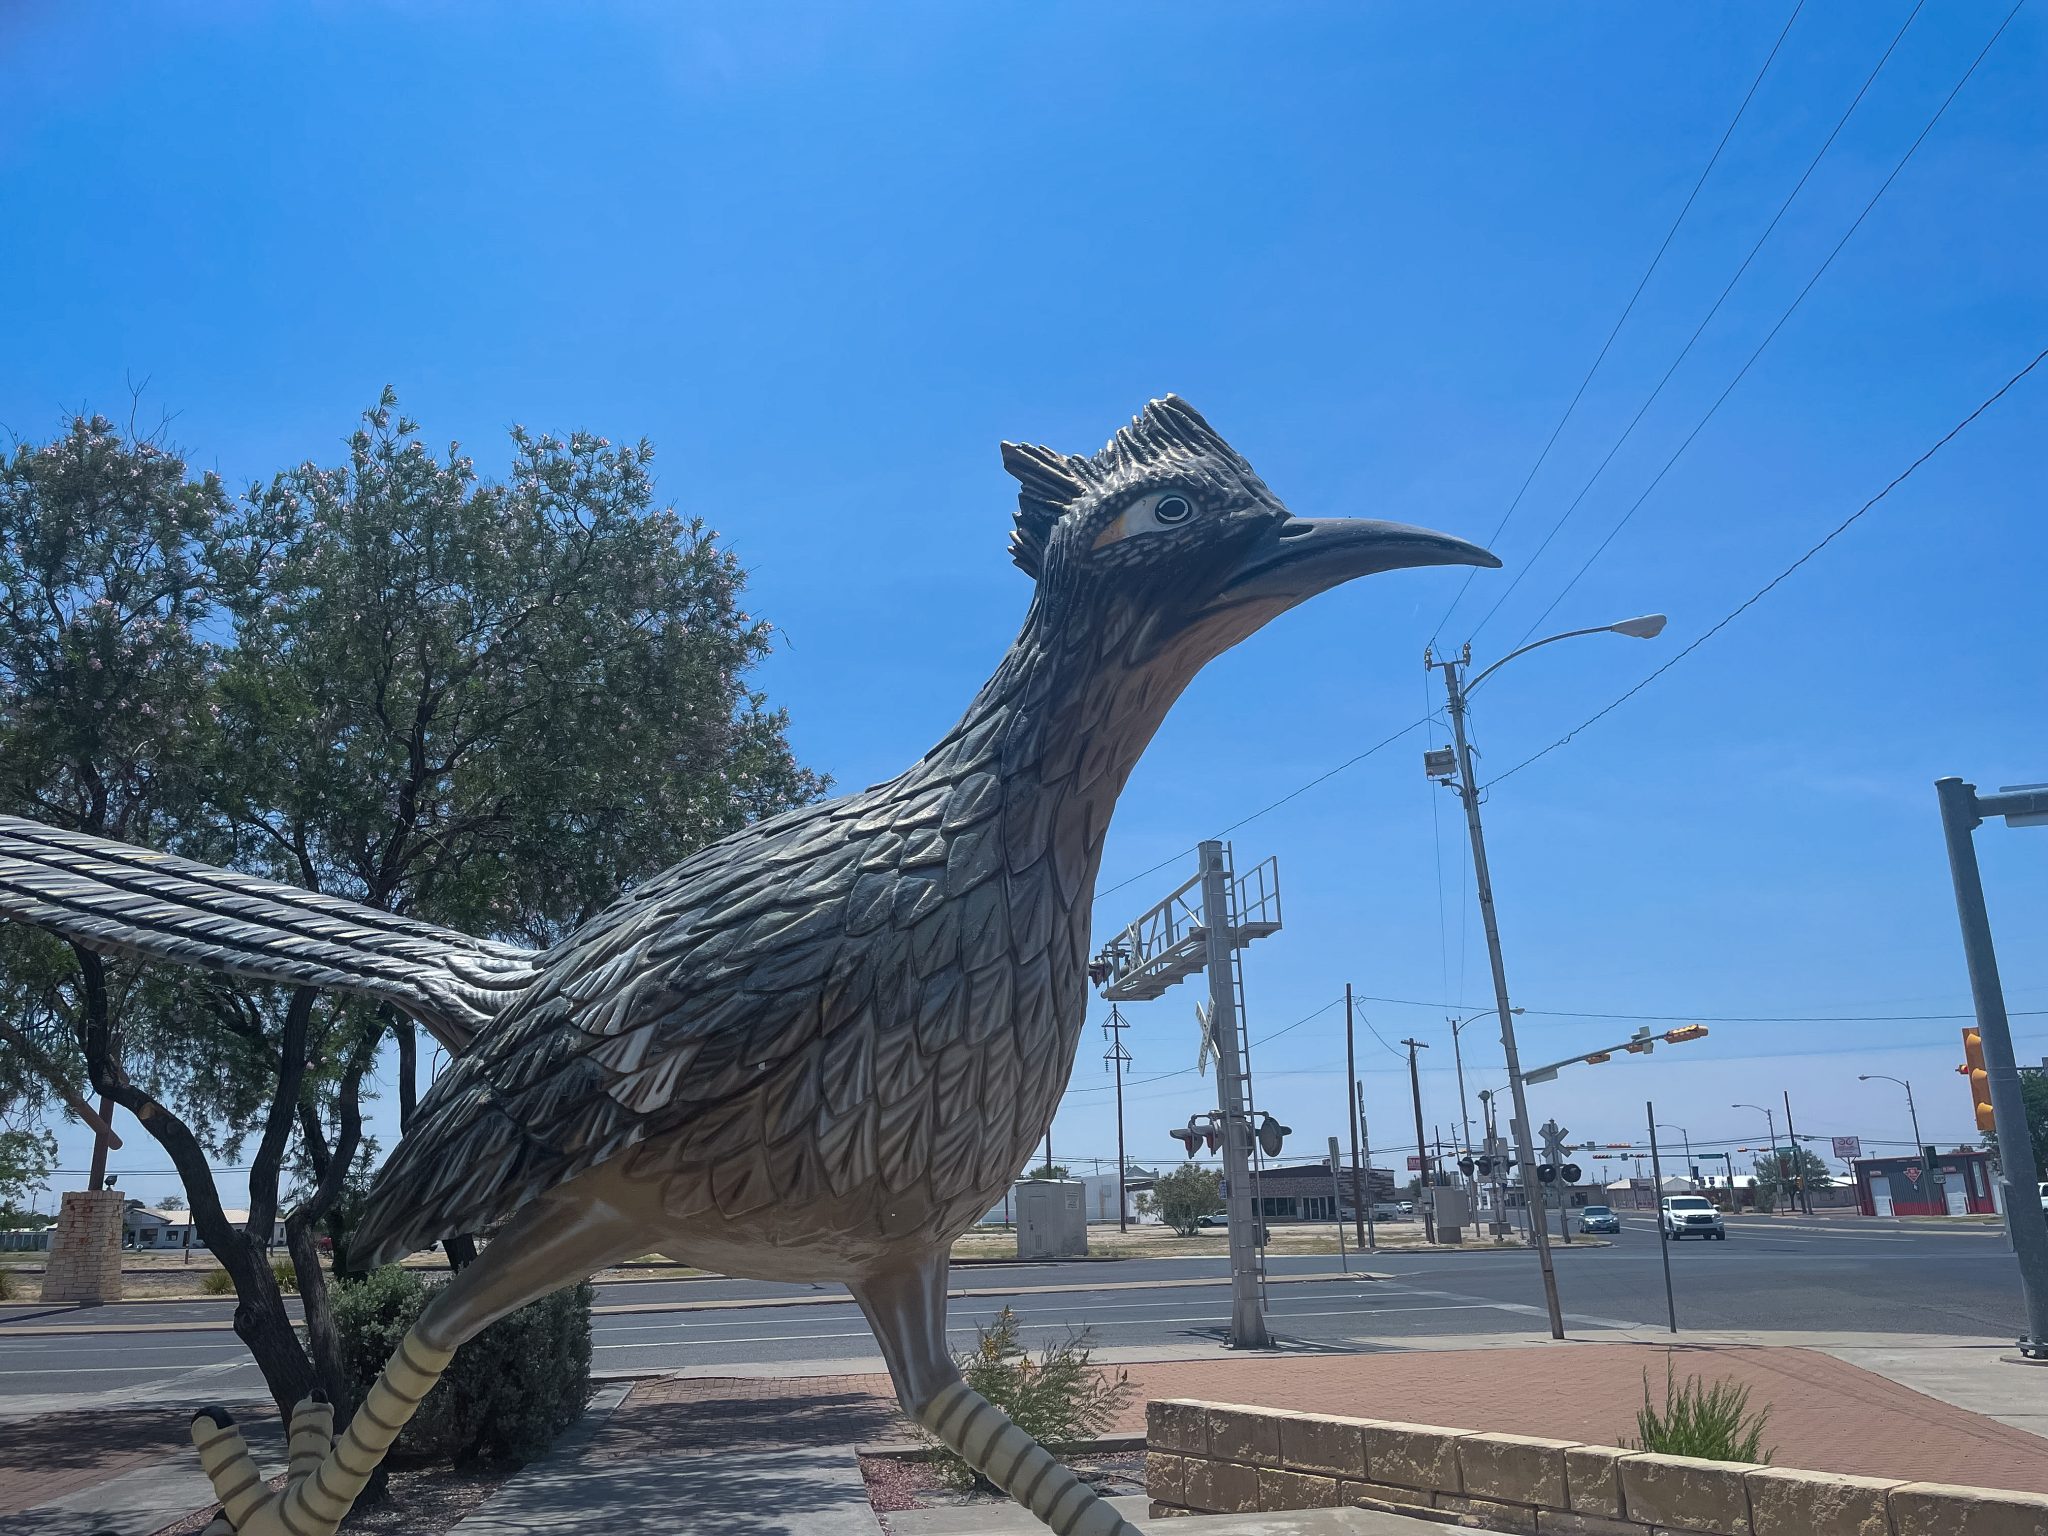 giant roadrunner statue in Fort Stockton, Texas